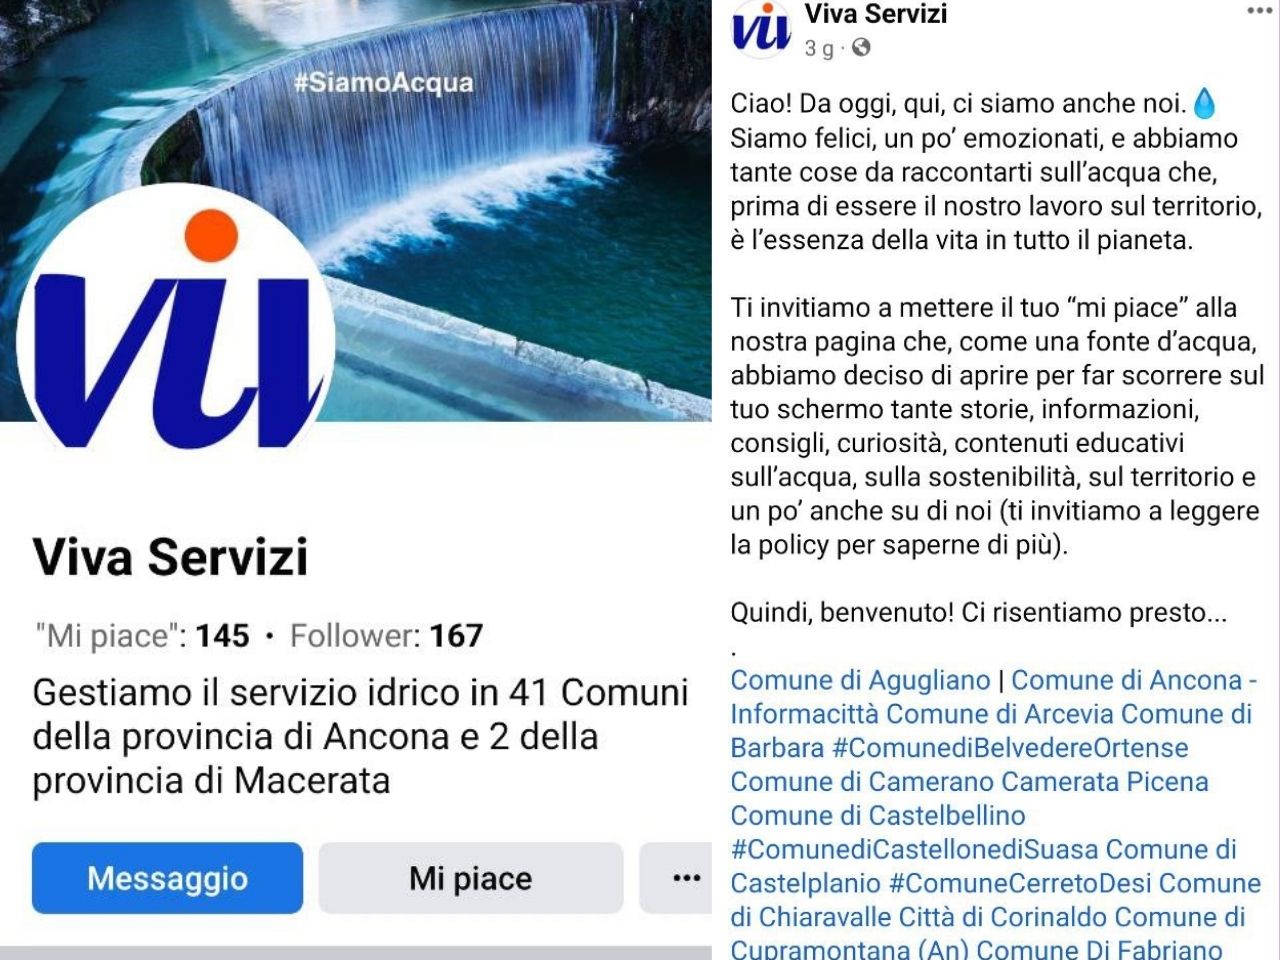 Viva Servizi approda su Facebook e Instagram